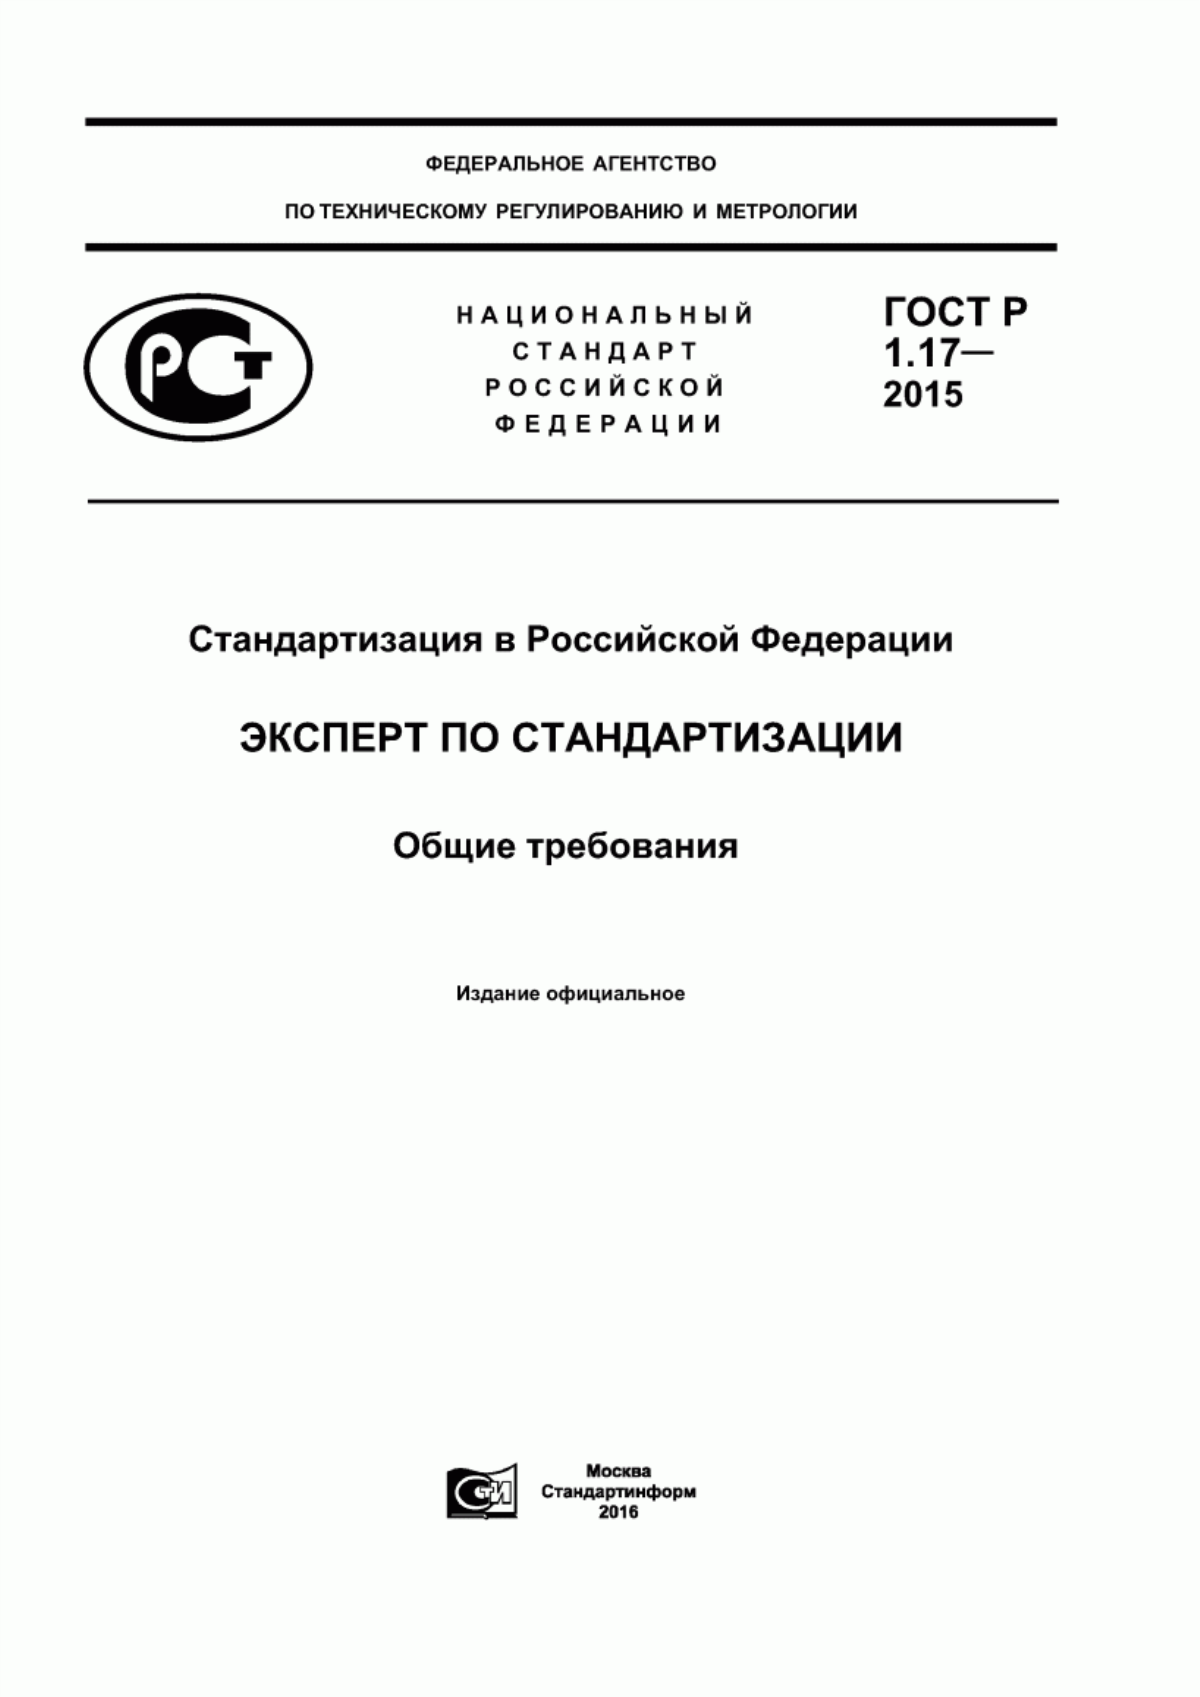 ГОСТ Р 1.17-2015 Стандартизация в Российской Федерации. Эксперт по стандартизации. Общие требования